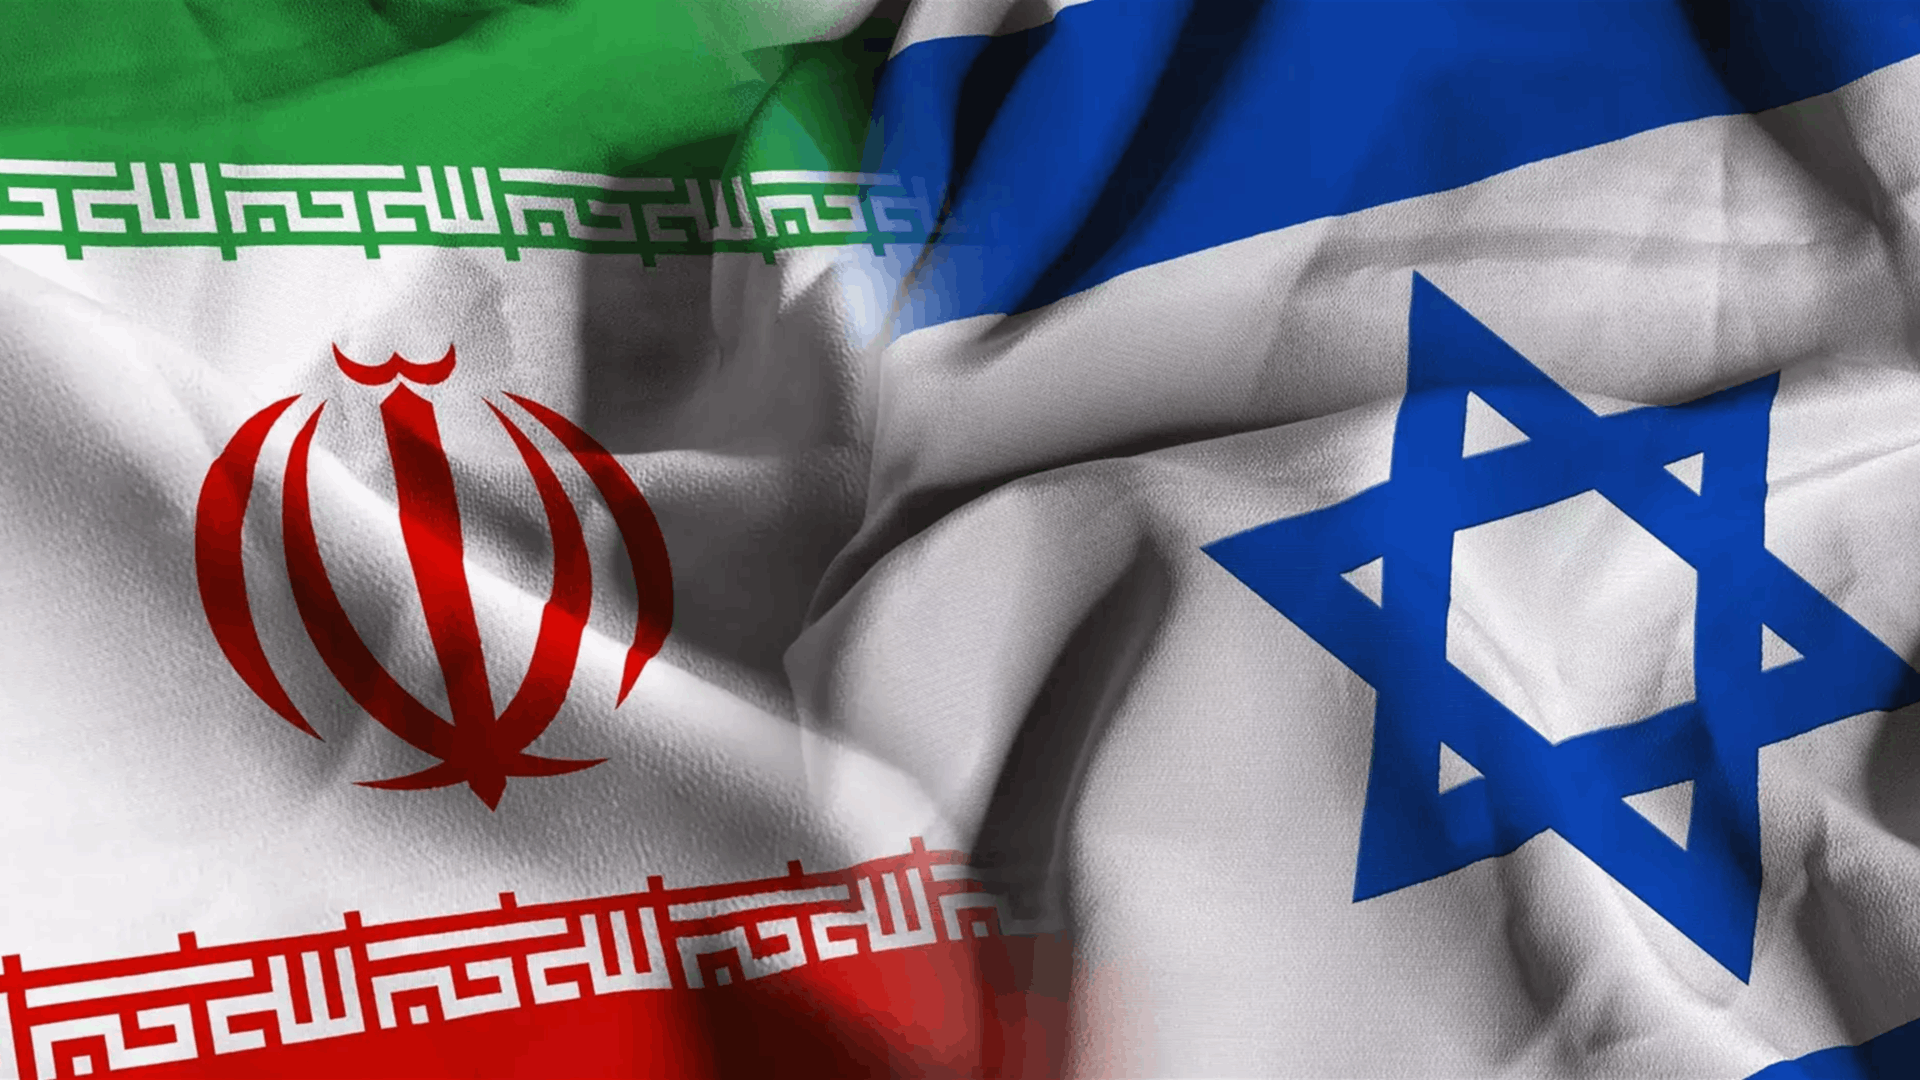 إسرائيل تريد إيذاء إيران مع تجنب حرب شاملة وبلا اصابات..وضربة محتملة للمنشأة في طهران أو هجوم إلكتروني